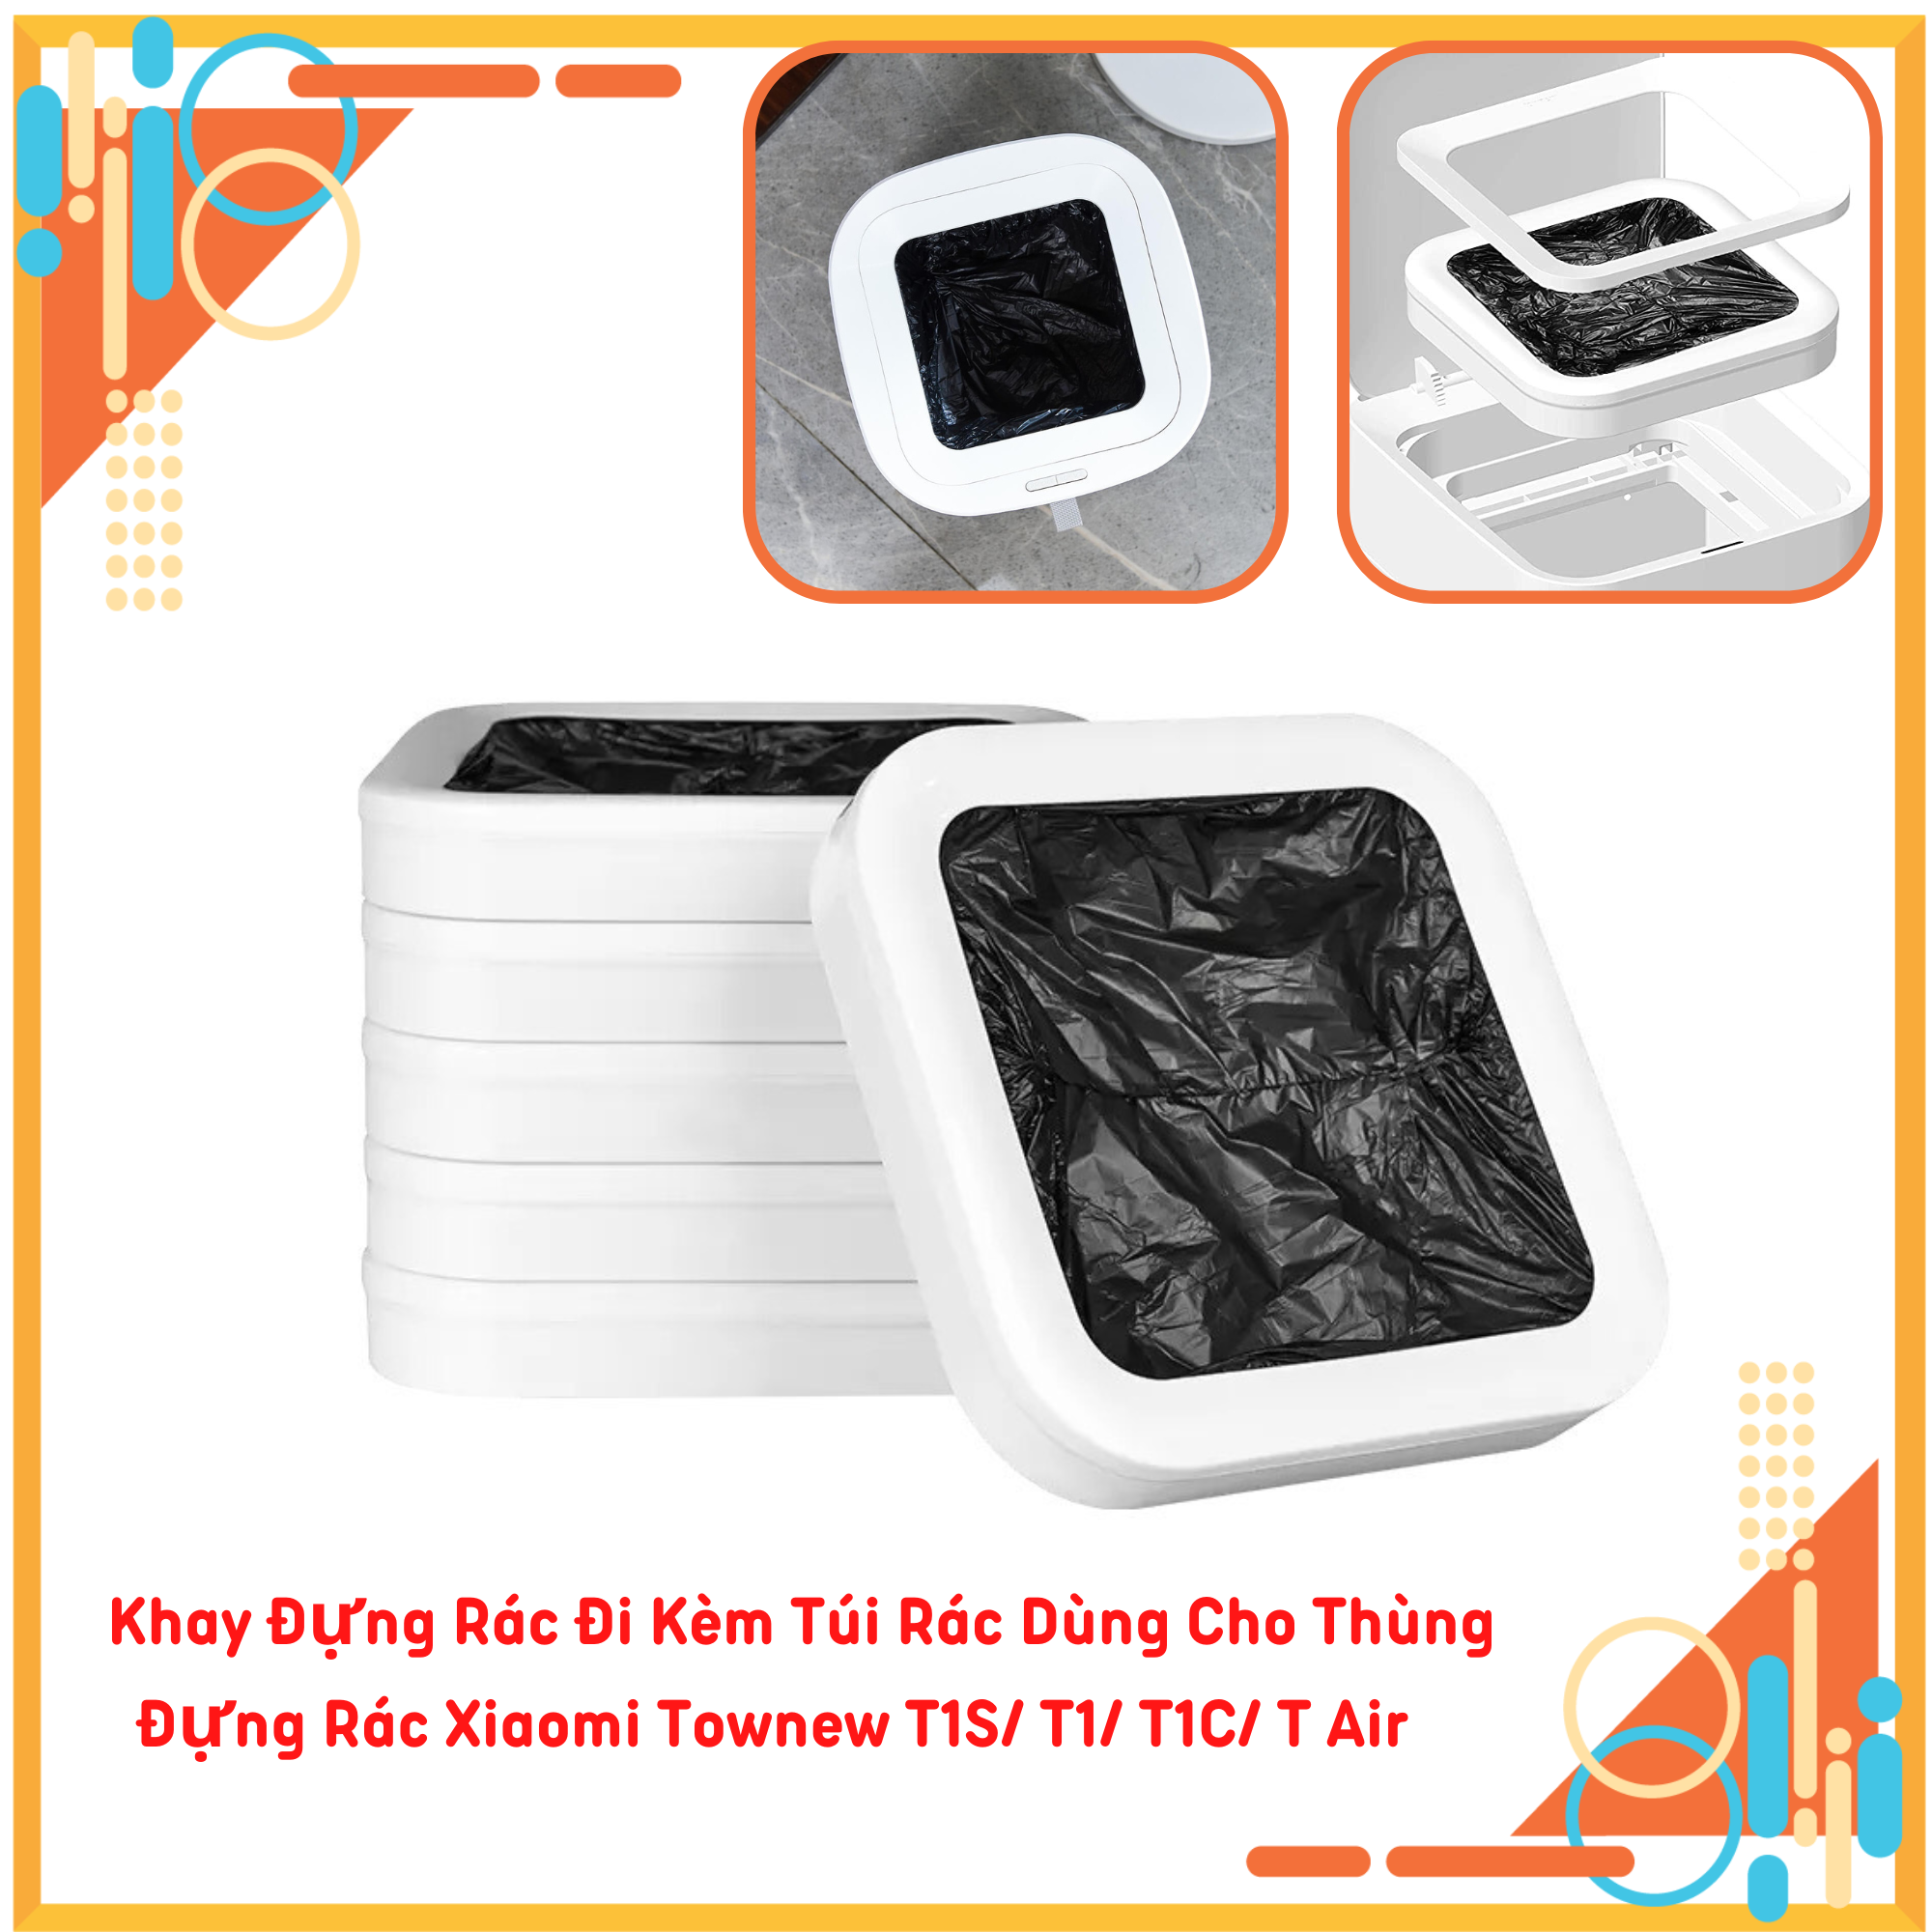 Khay Đựng Rác Đi Kèm Túi Rác Dùng Cho Thùng Đựng Rác Xiaomi Townew T1S T1